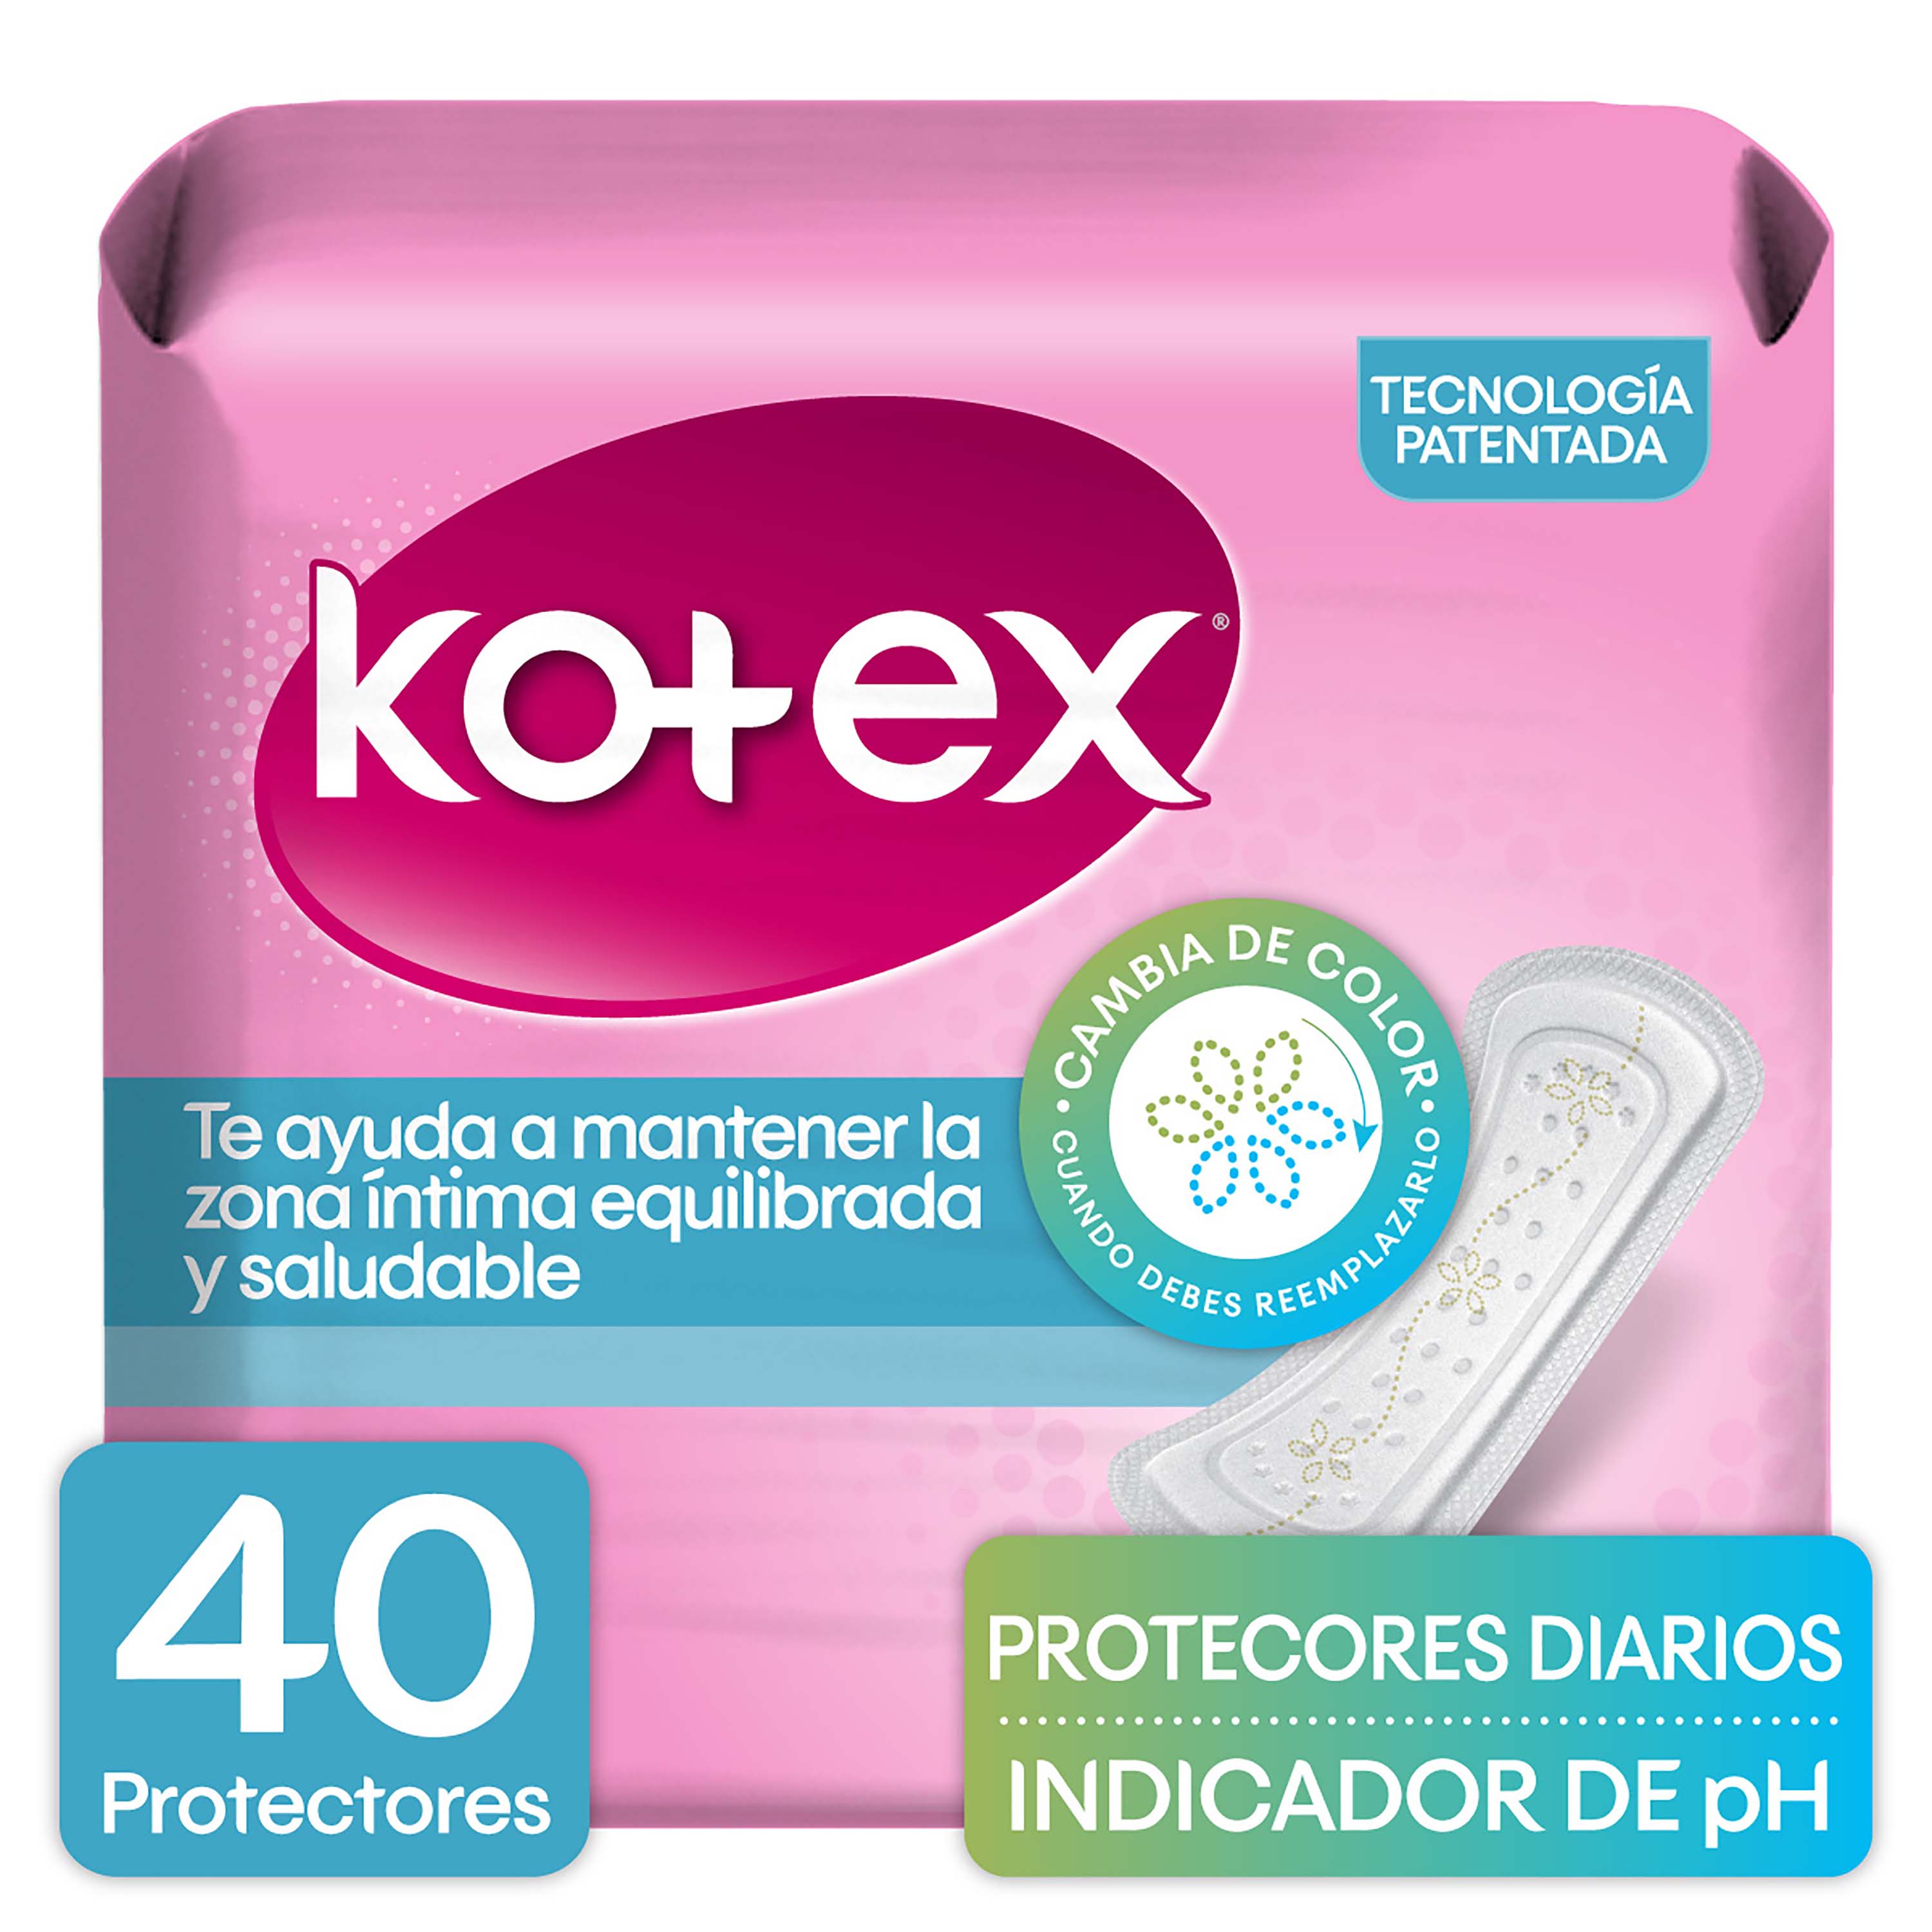 Protectores-Diarios-Marca-Kotex-Con-Indicador-De-PH-40Uds-1-23497